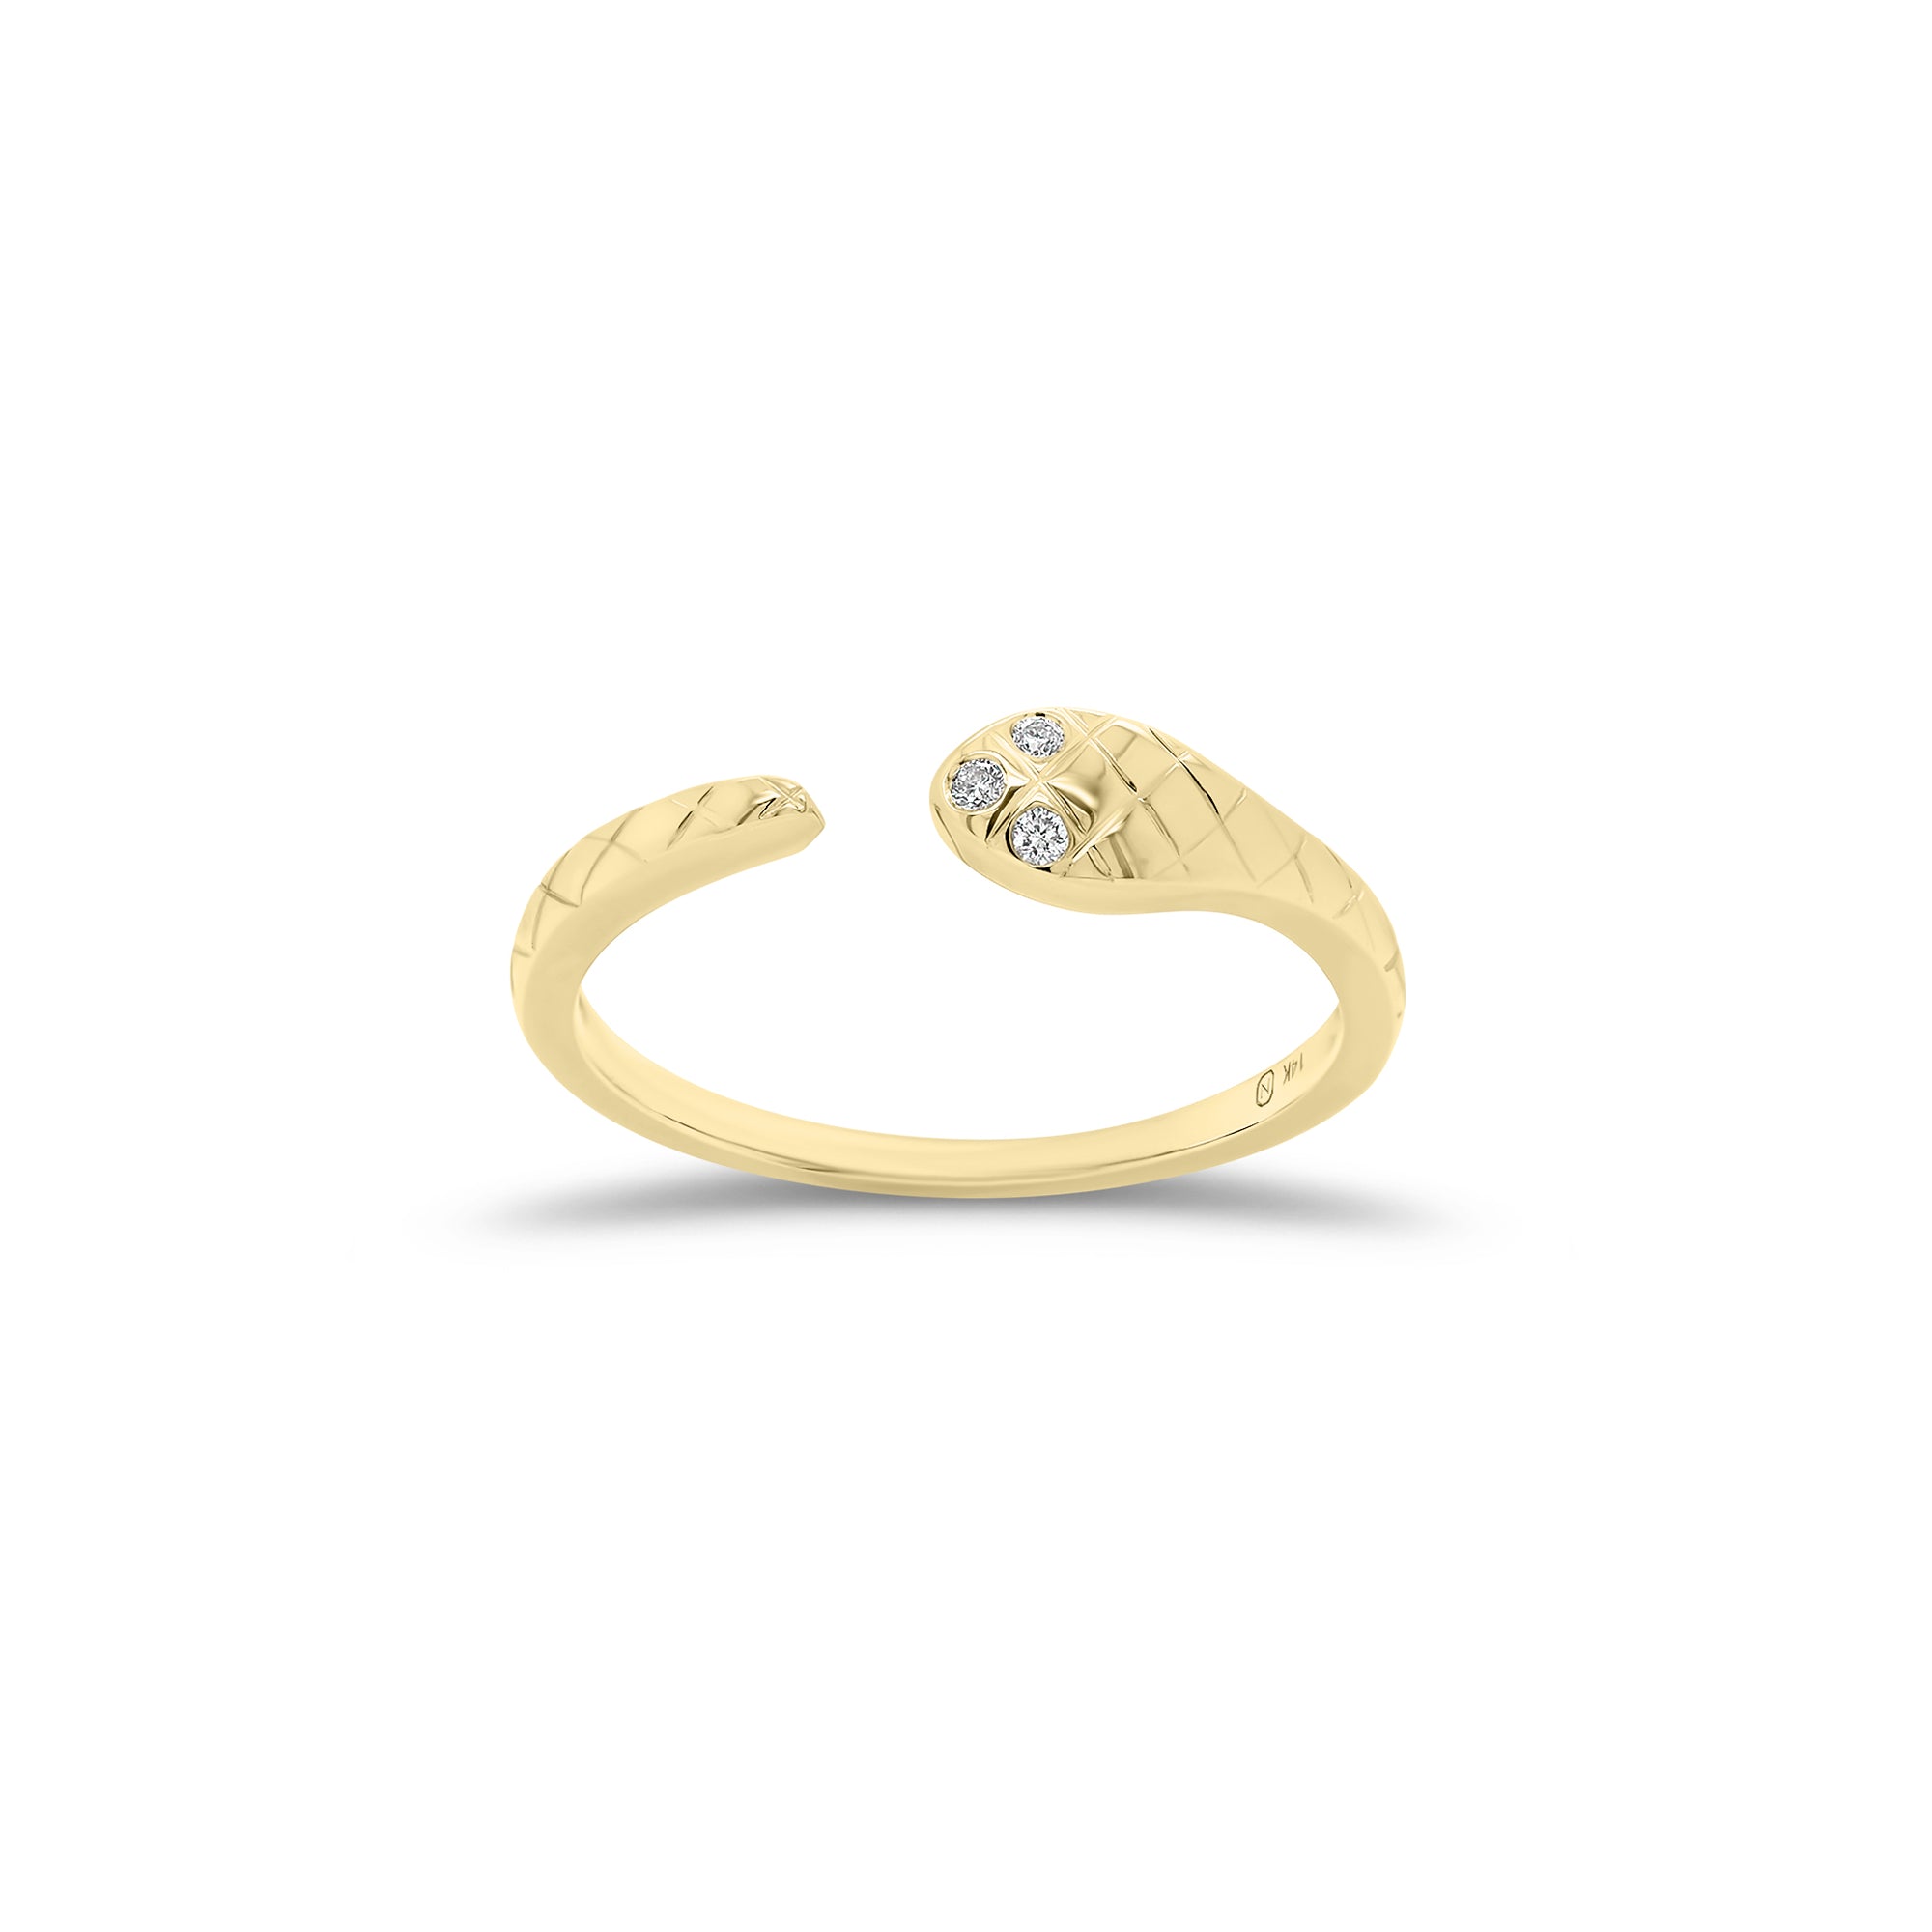 Diamond Snake Open Ring - 14K gold weighing 1.44 grams  - 3 round diamonds weighing 0.02 carats